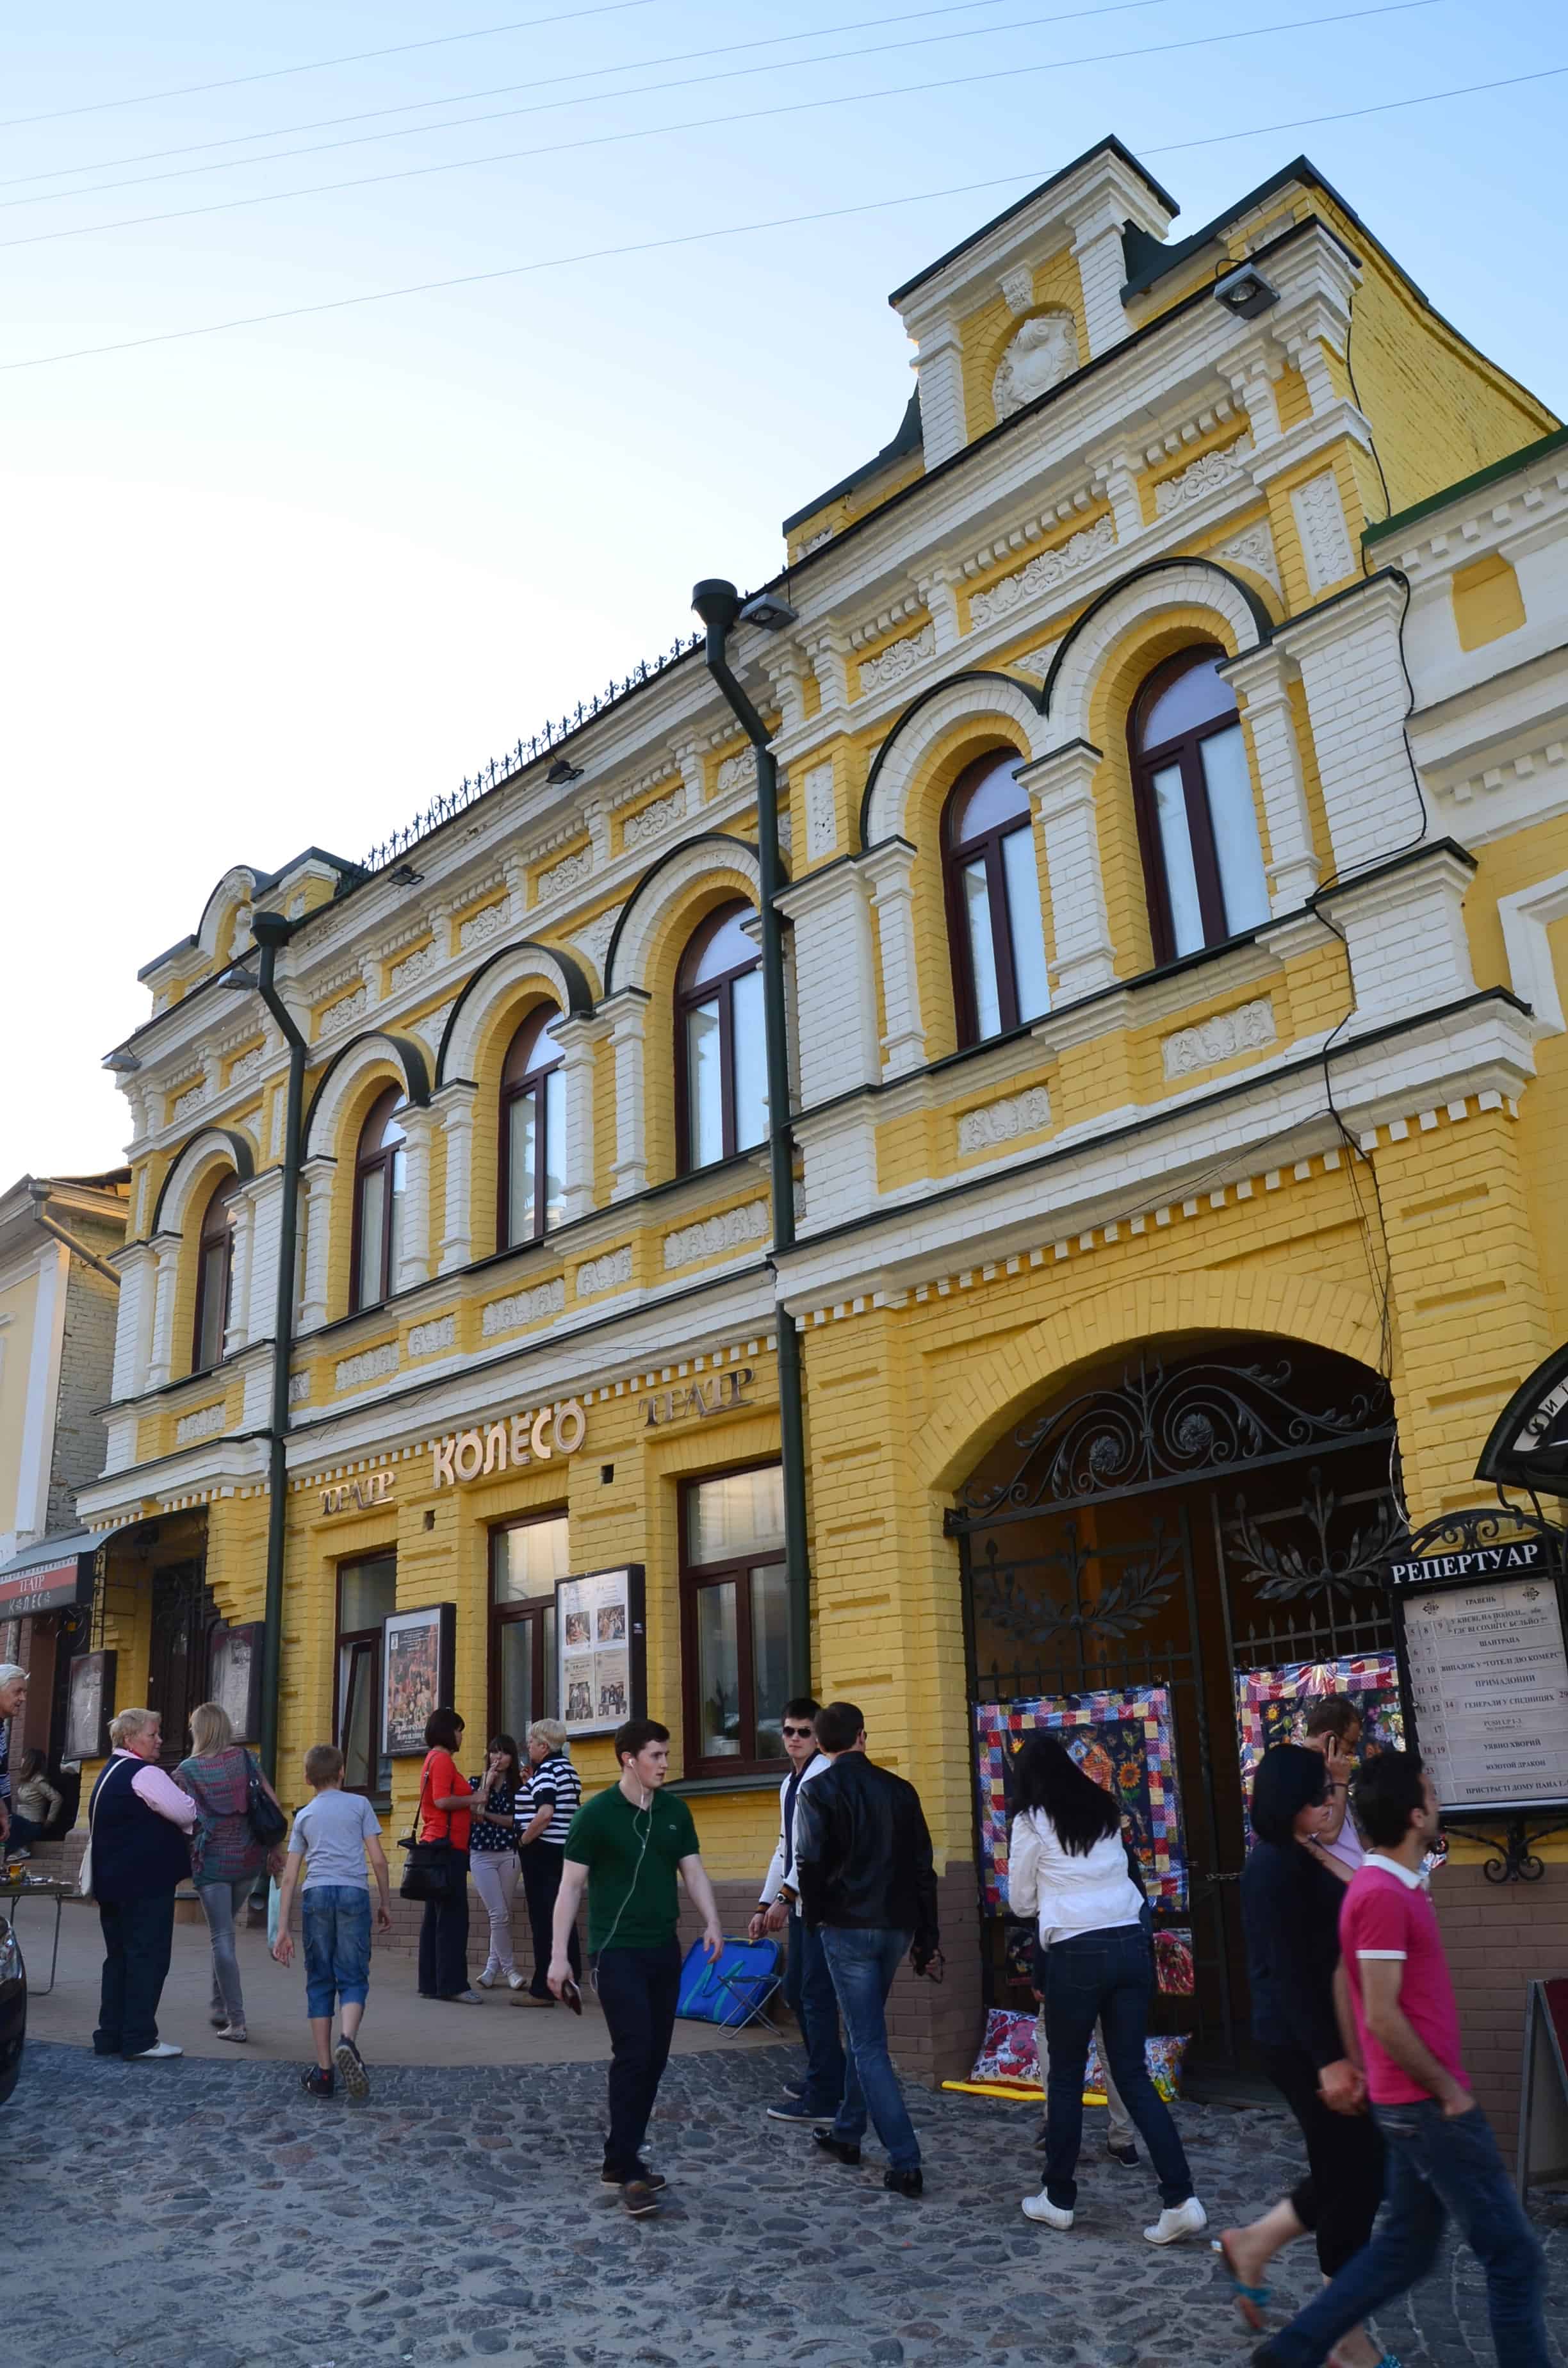 Koleso Theatre in Kyiv, Ukraine